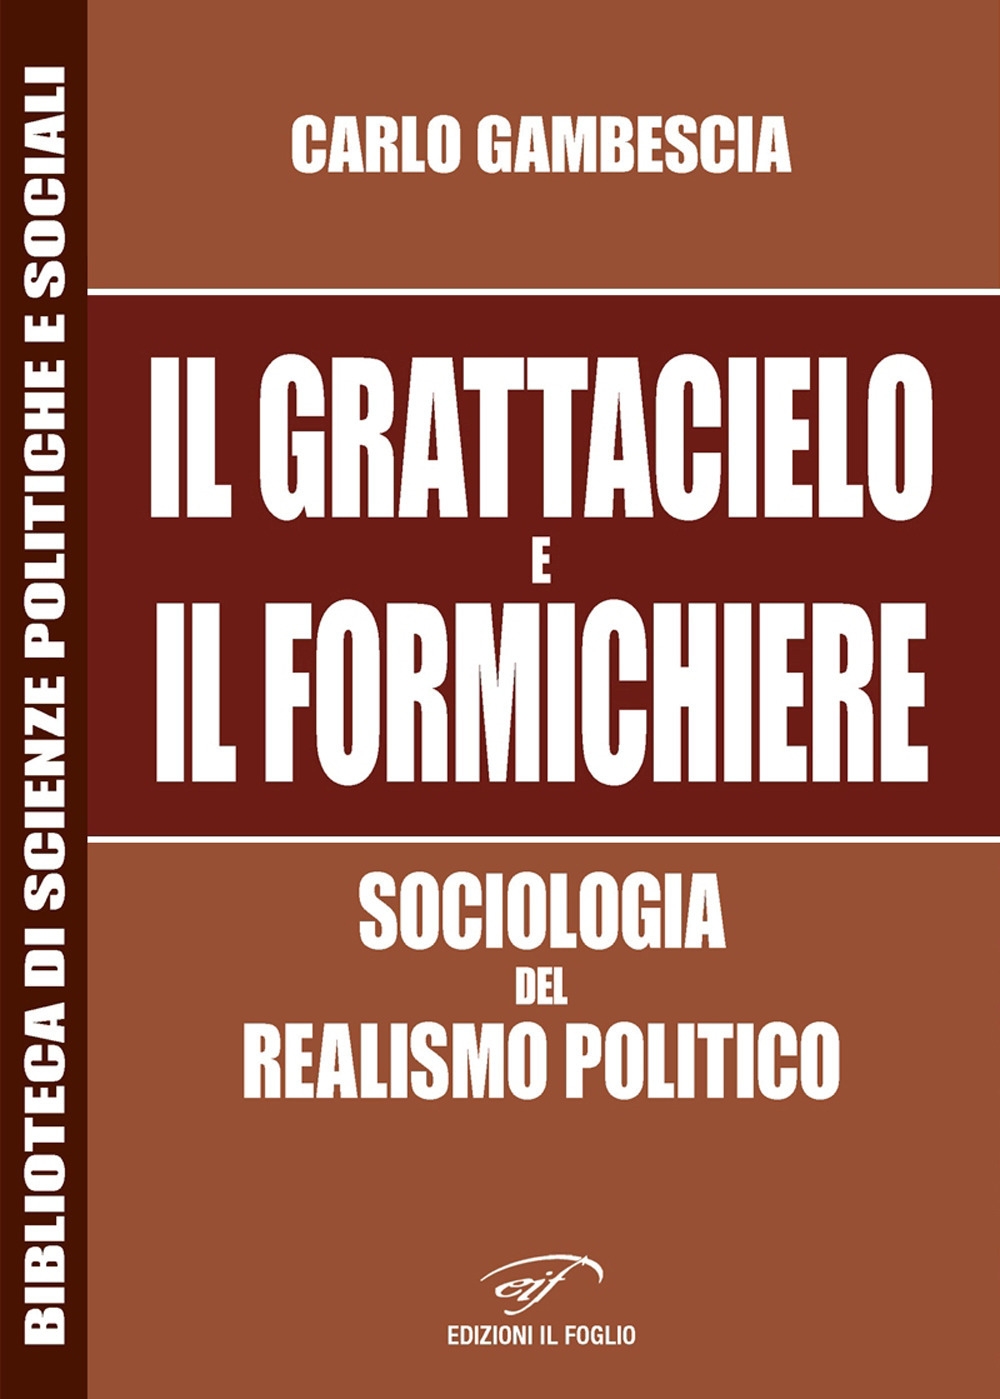 “Il grattacielo e il formichiere” di Carlo Gambescia. Sociologia del realismo politico – di Aldo La Fata